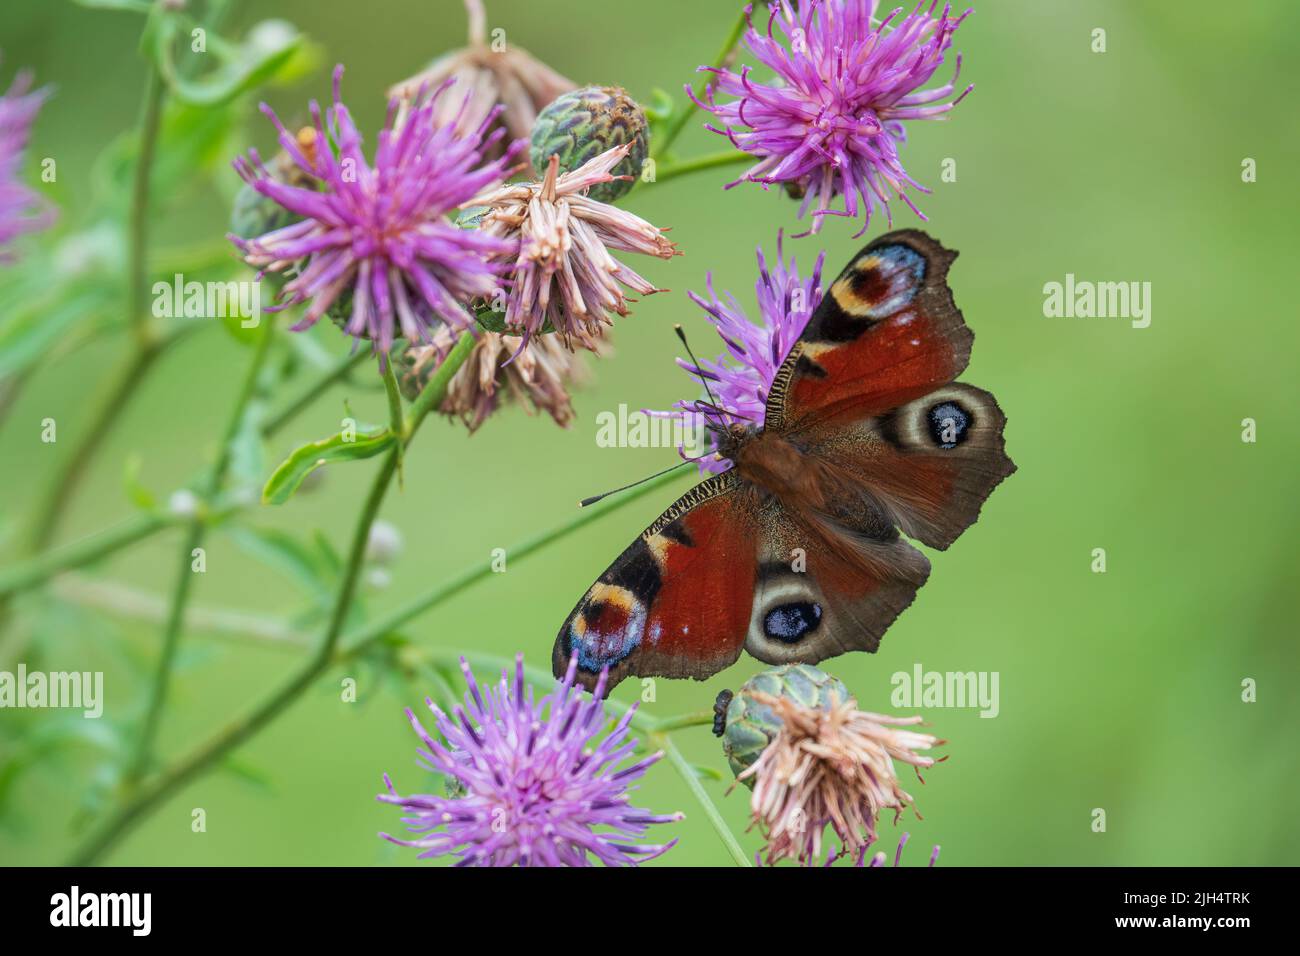 Papillon paon coloré sur les fleurs du terrier. Insecte d'été typique de l'europe Banque D'Images